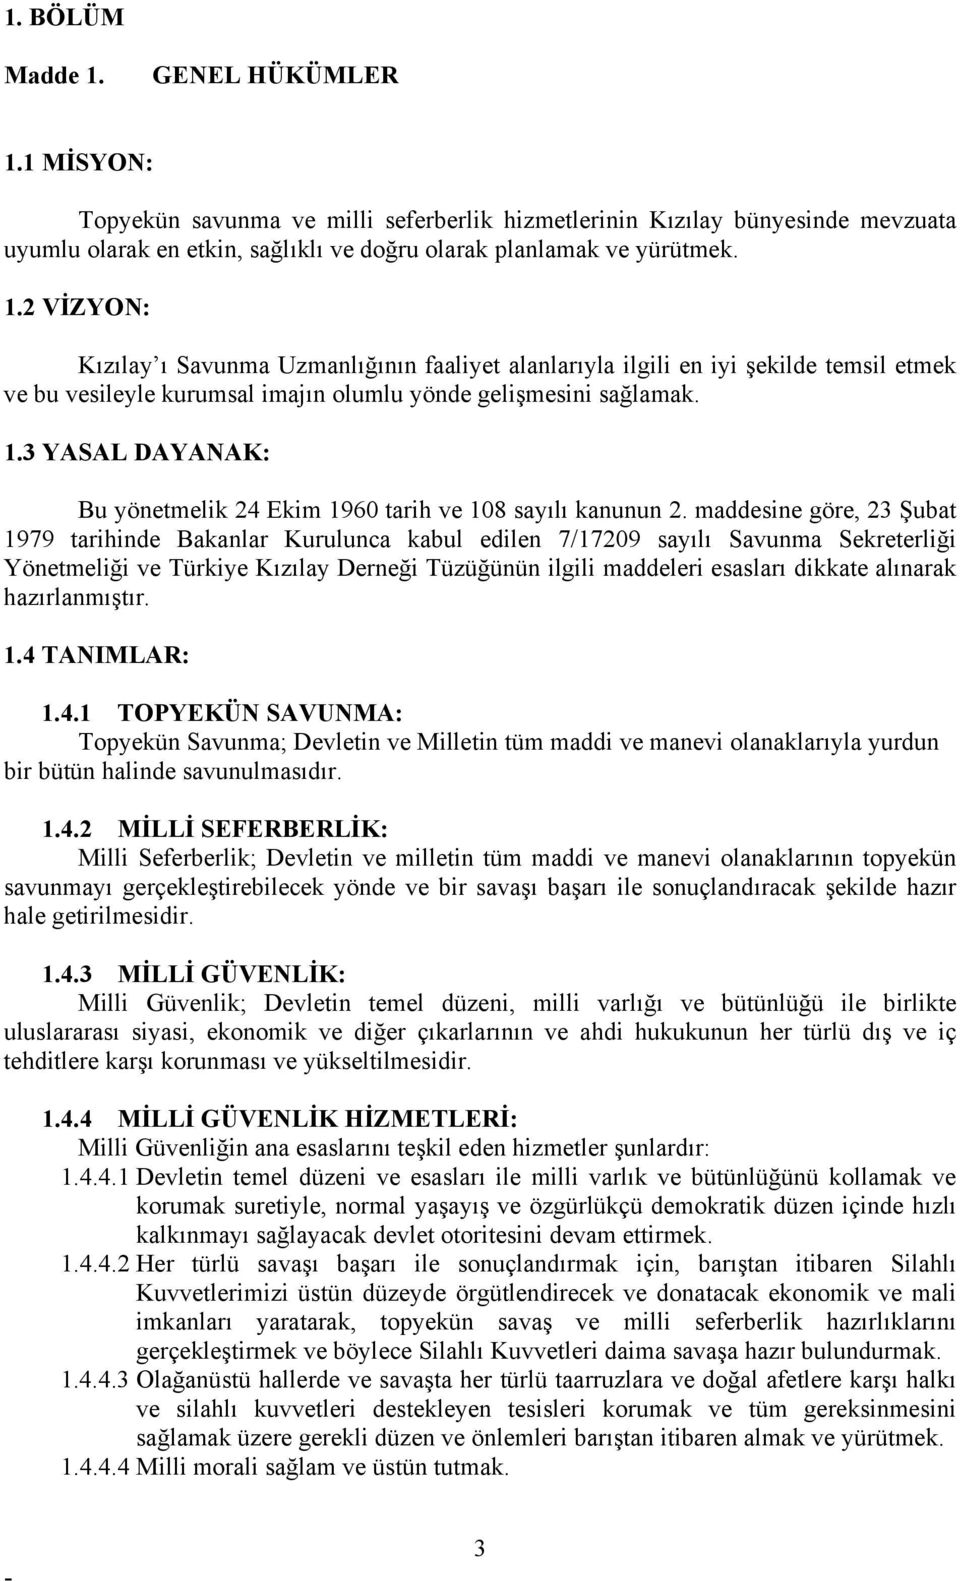 maddesine göre, 23 Şubat 1979 tarihinde Bakanlar Kurulunca kabul edilen 7/17209 sayılı Savunma Sekreterliği Yönetmeliği ve Türkiye Kızılay Derneği Tüzüğünün ilgili maddeleri esasları dikkate alınarak